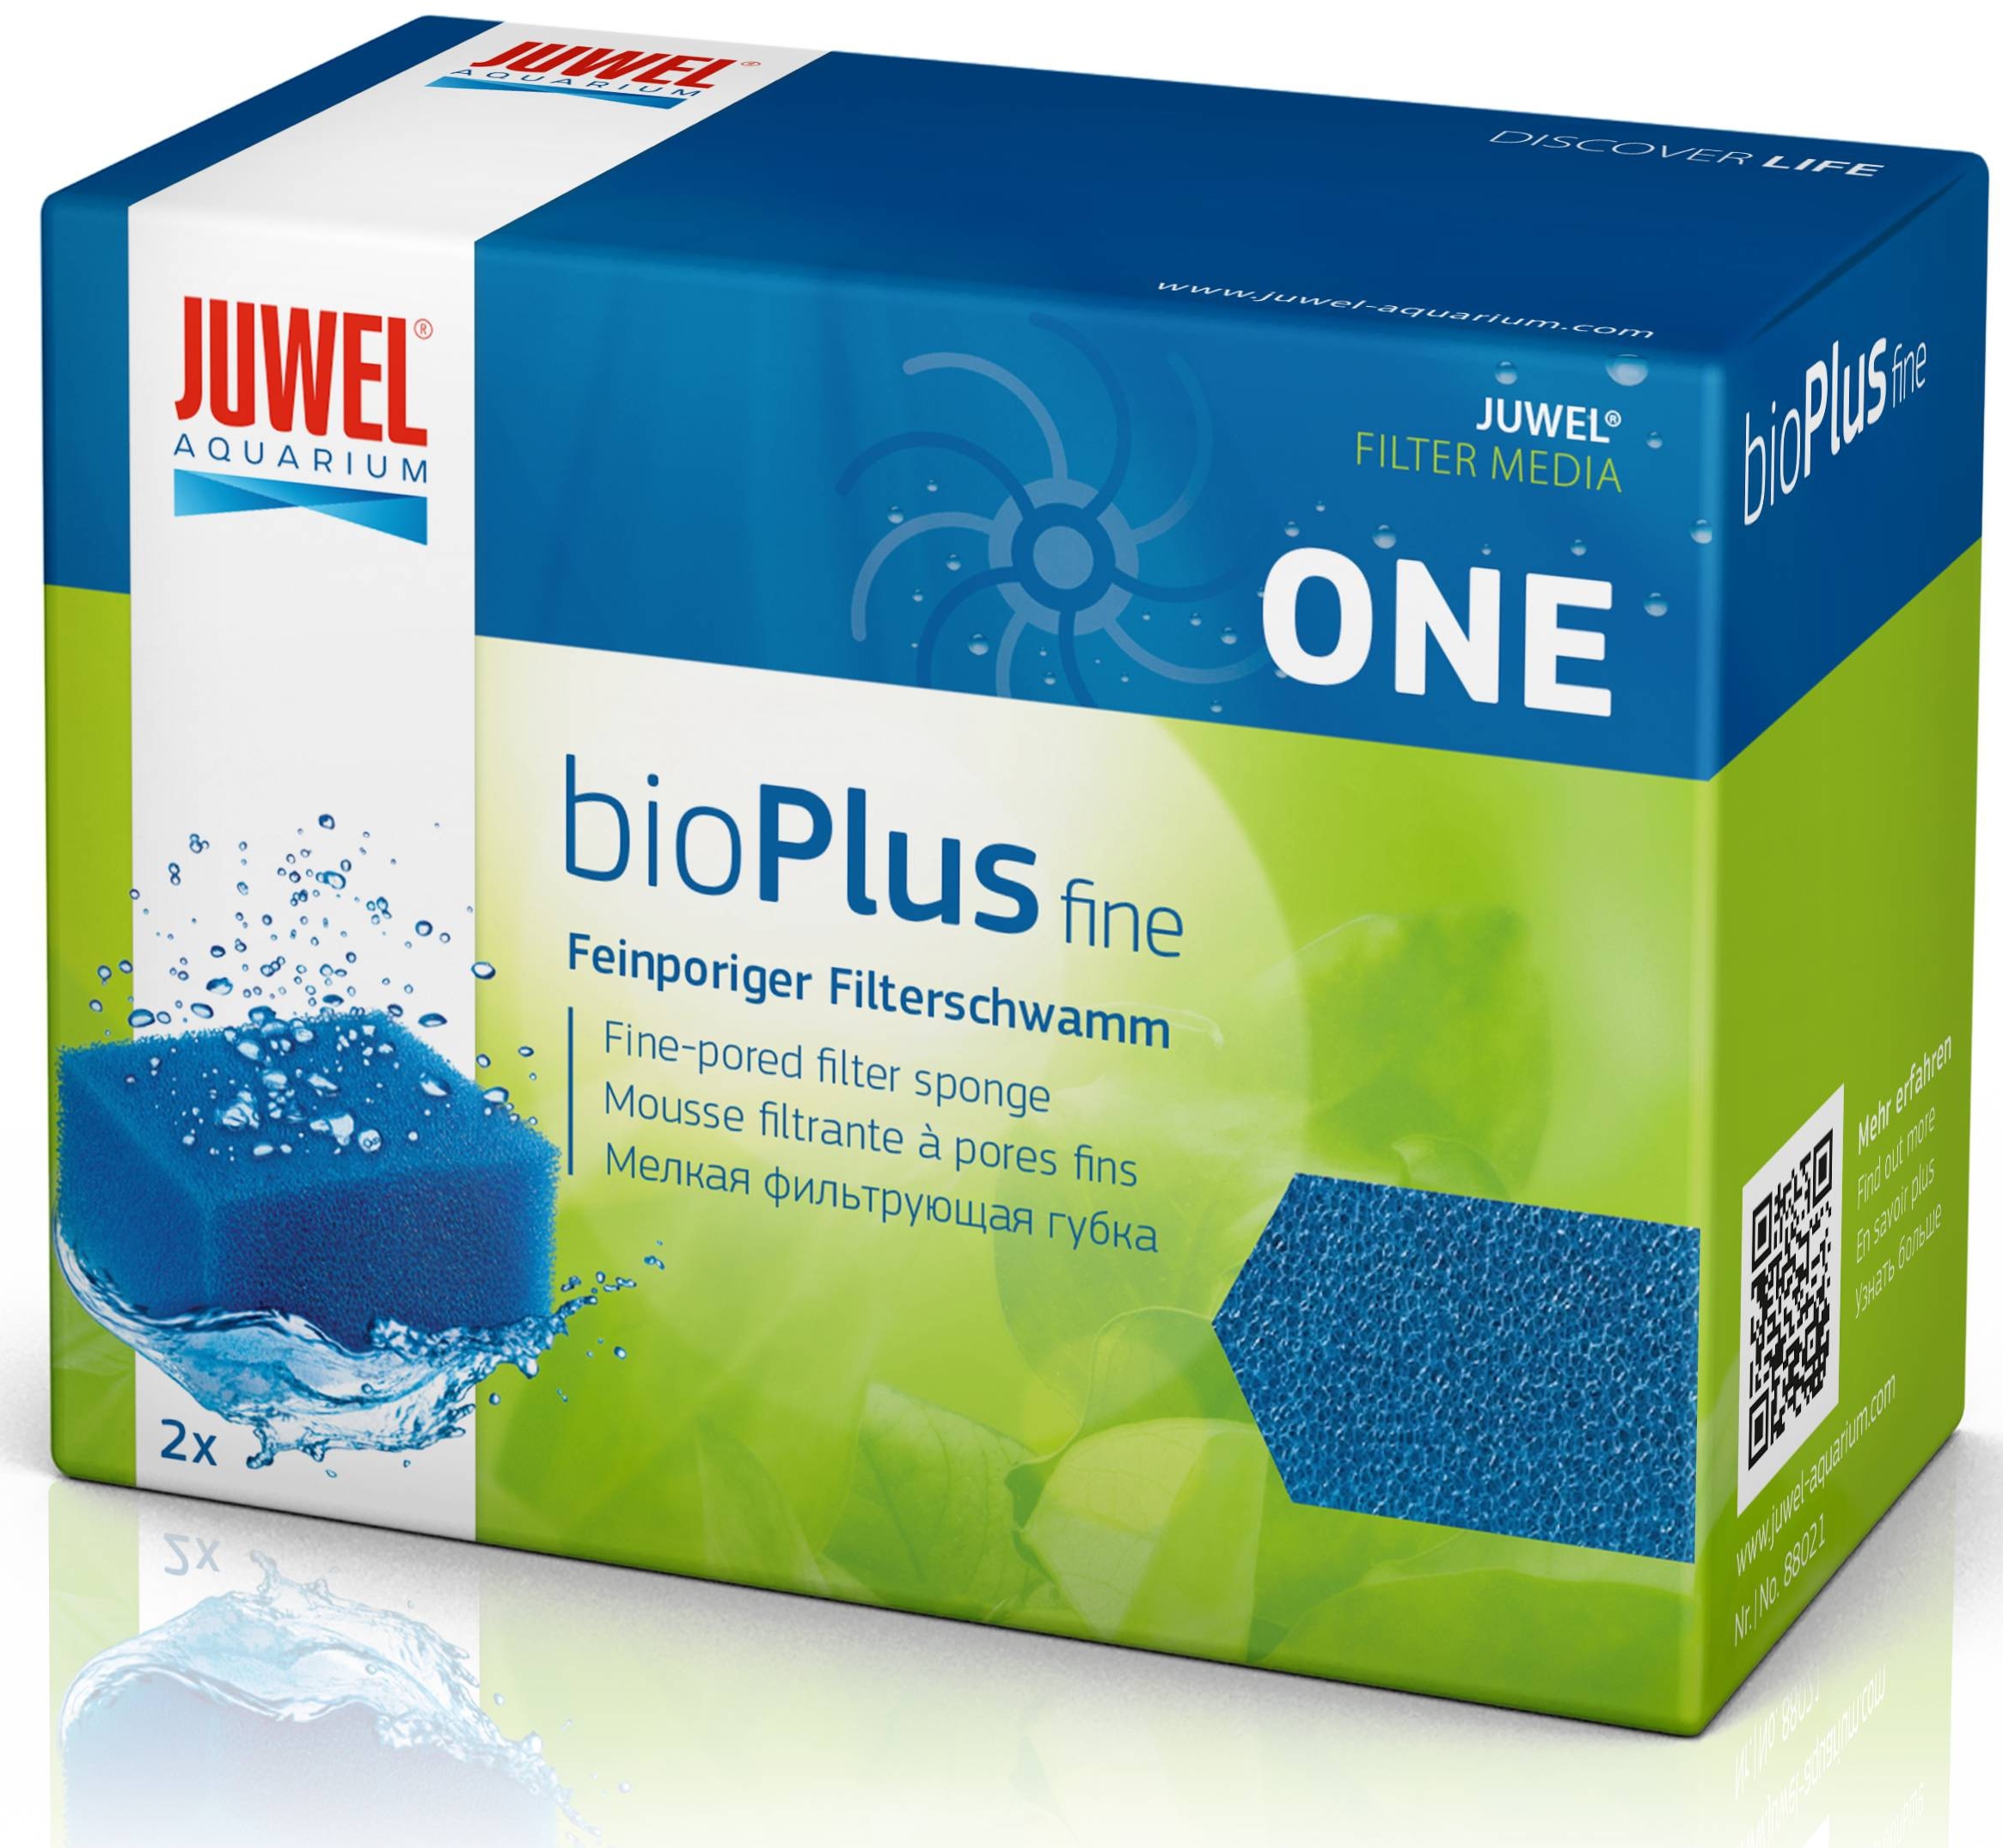 Juwel bioPlus fine ONE Filter Sponge